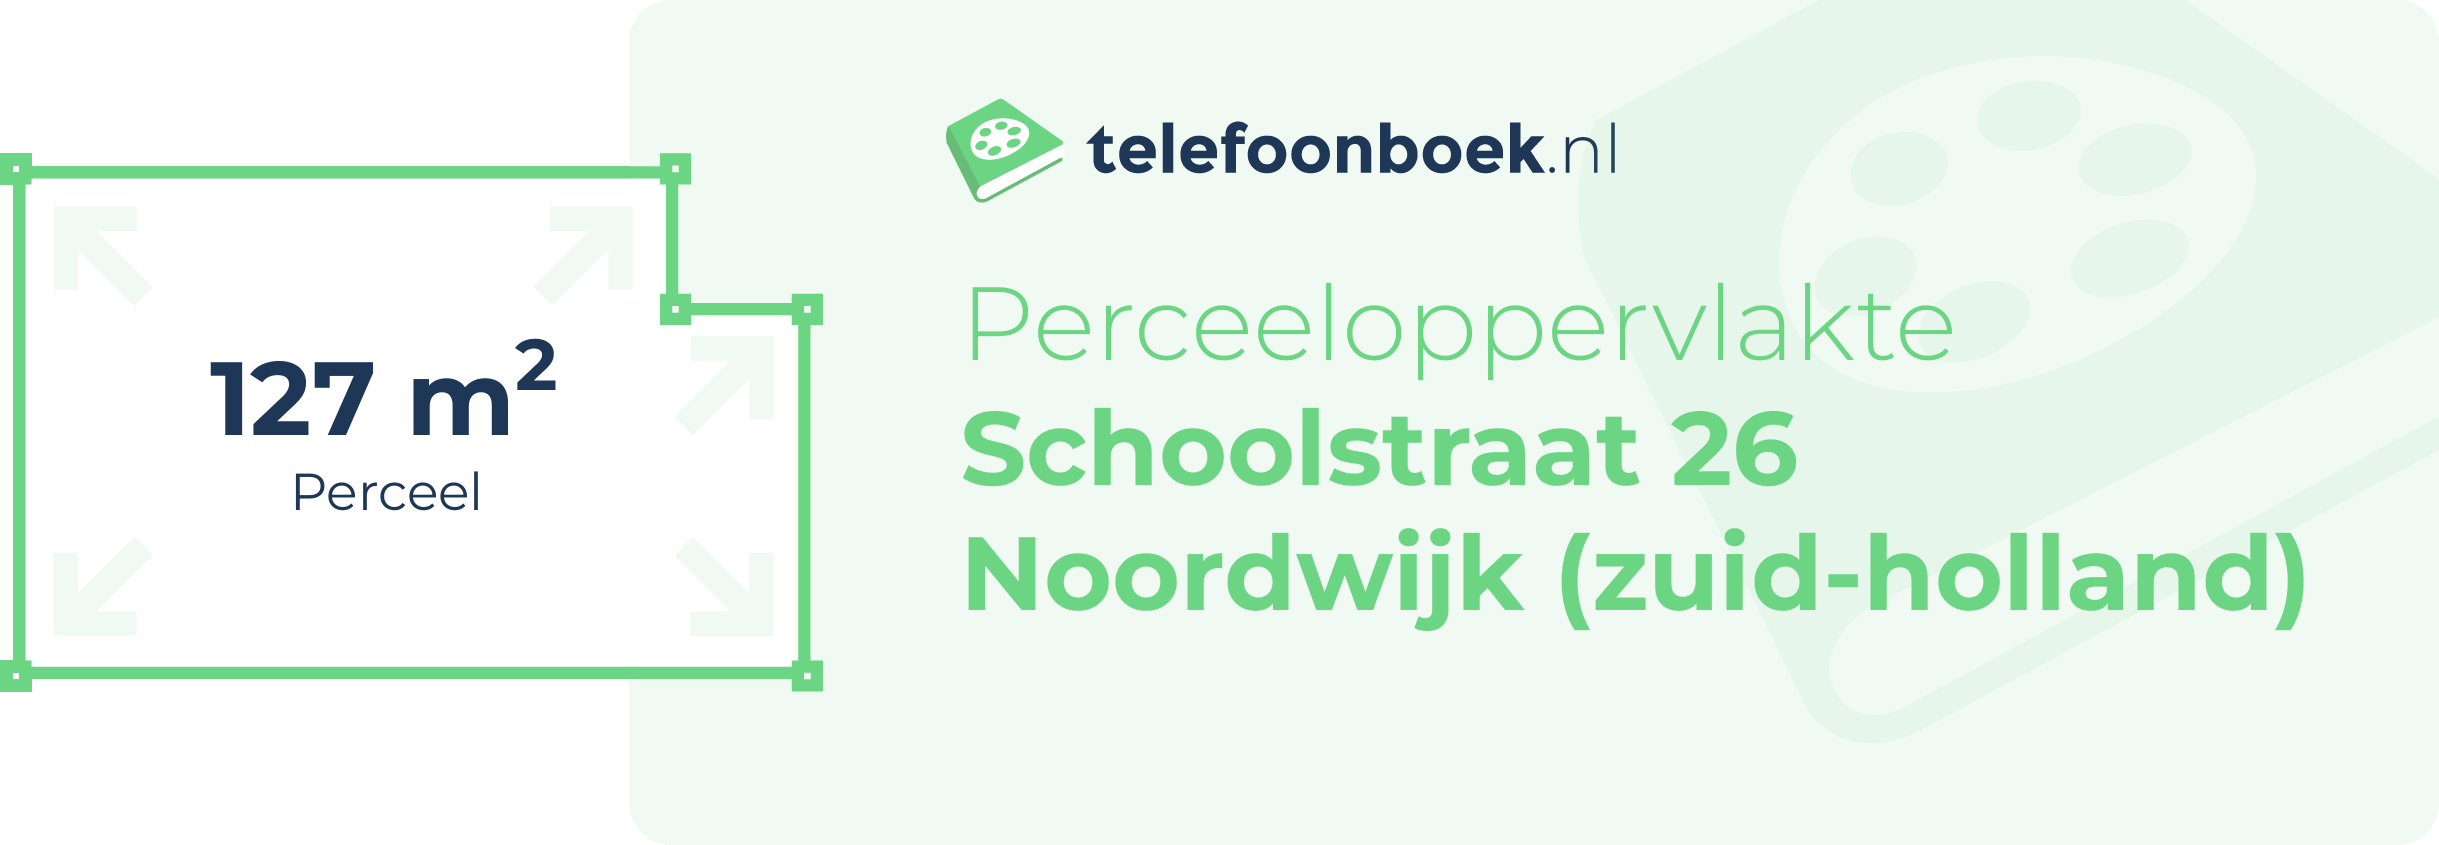 Perceeloppervlakte Schoolstraat 26 Noordwijk (Zuid-Holland)